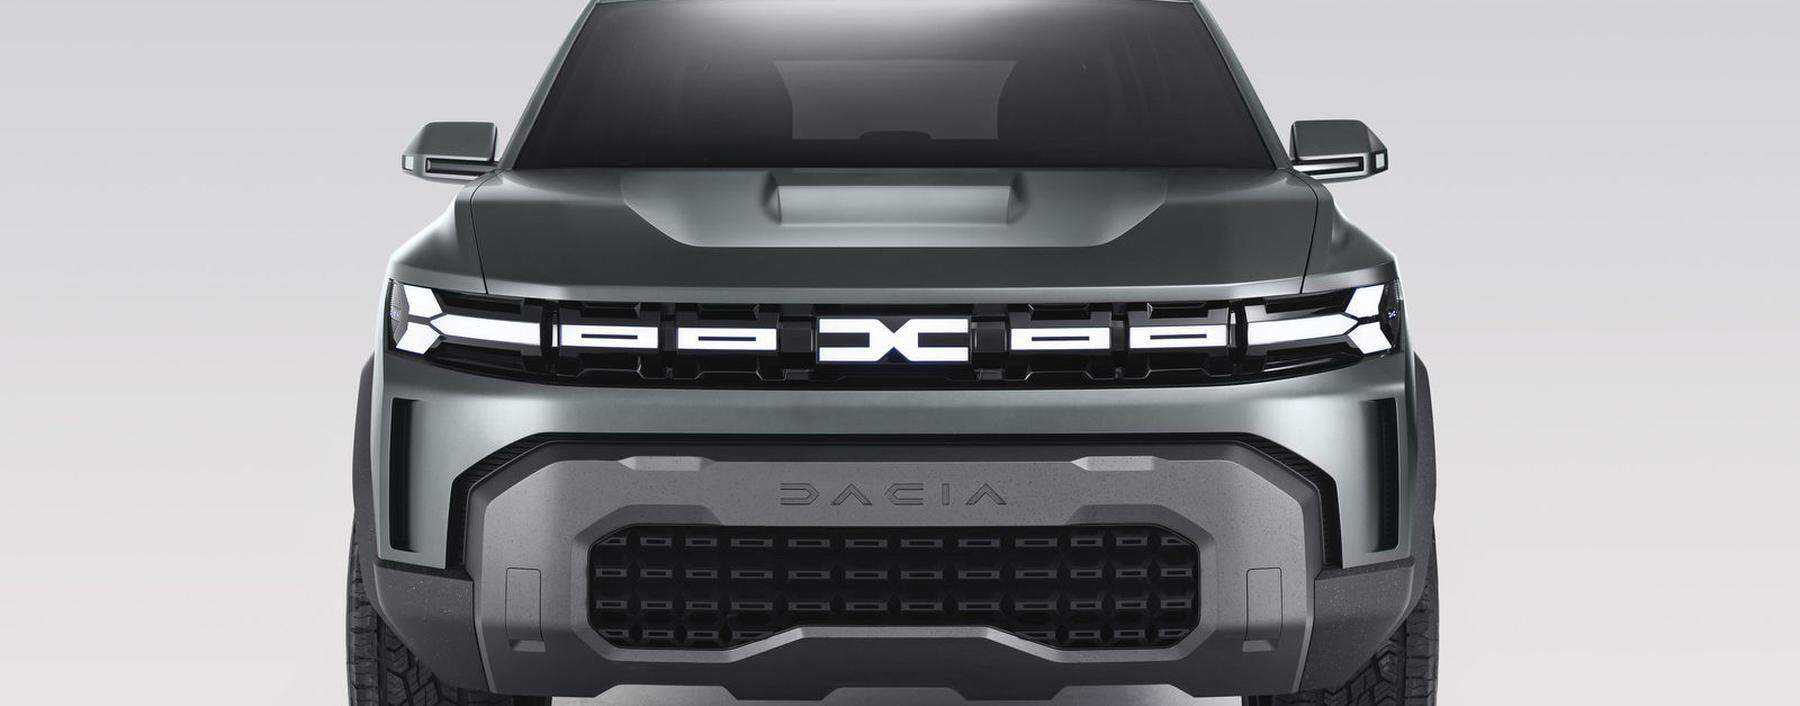 Groß im Kommen: Mit dem Konzept Bigster zeigt Dacia ein kommendes SUV – und gleich auch das neue Markenlogo.